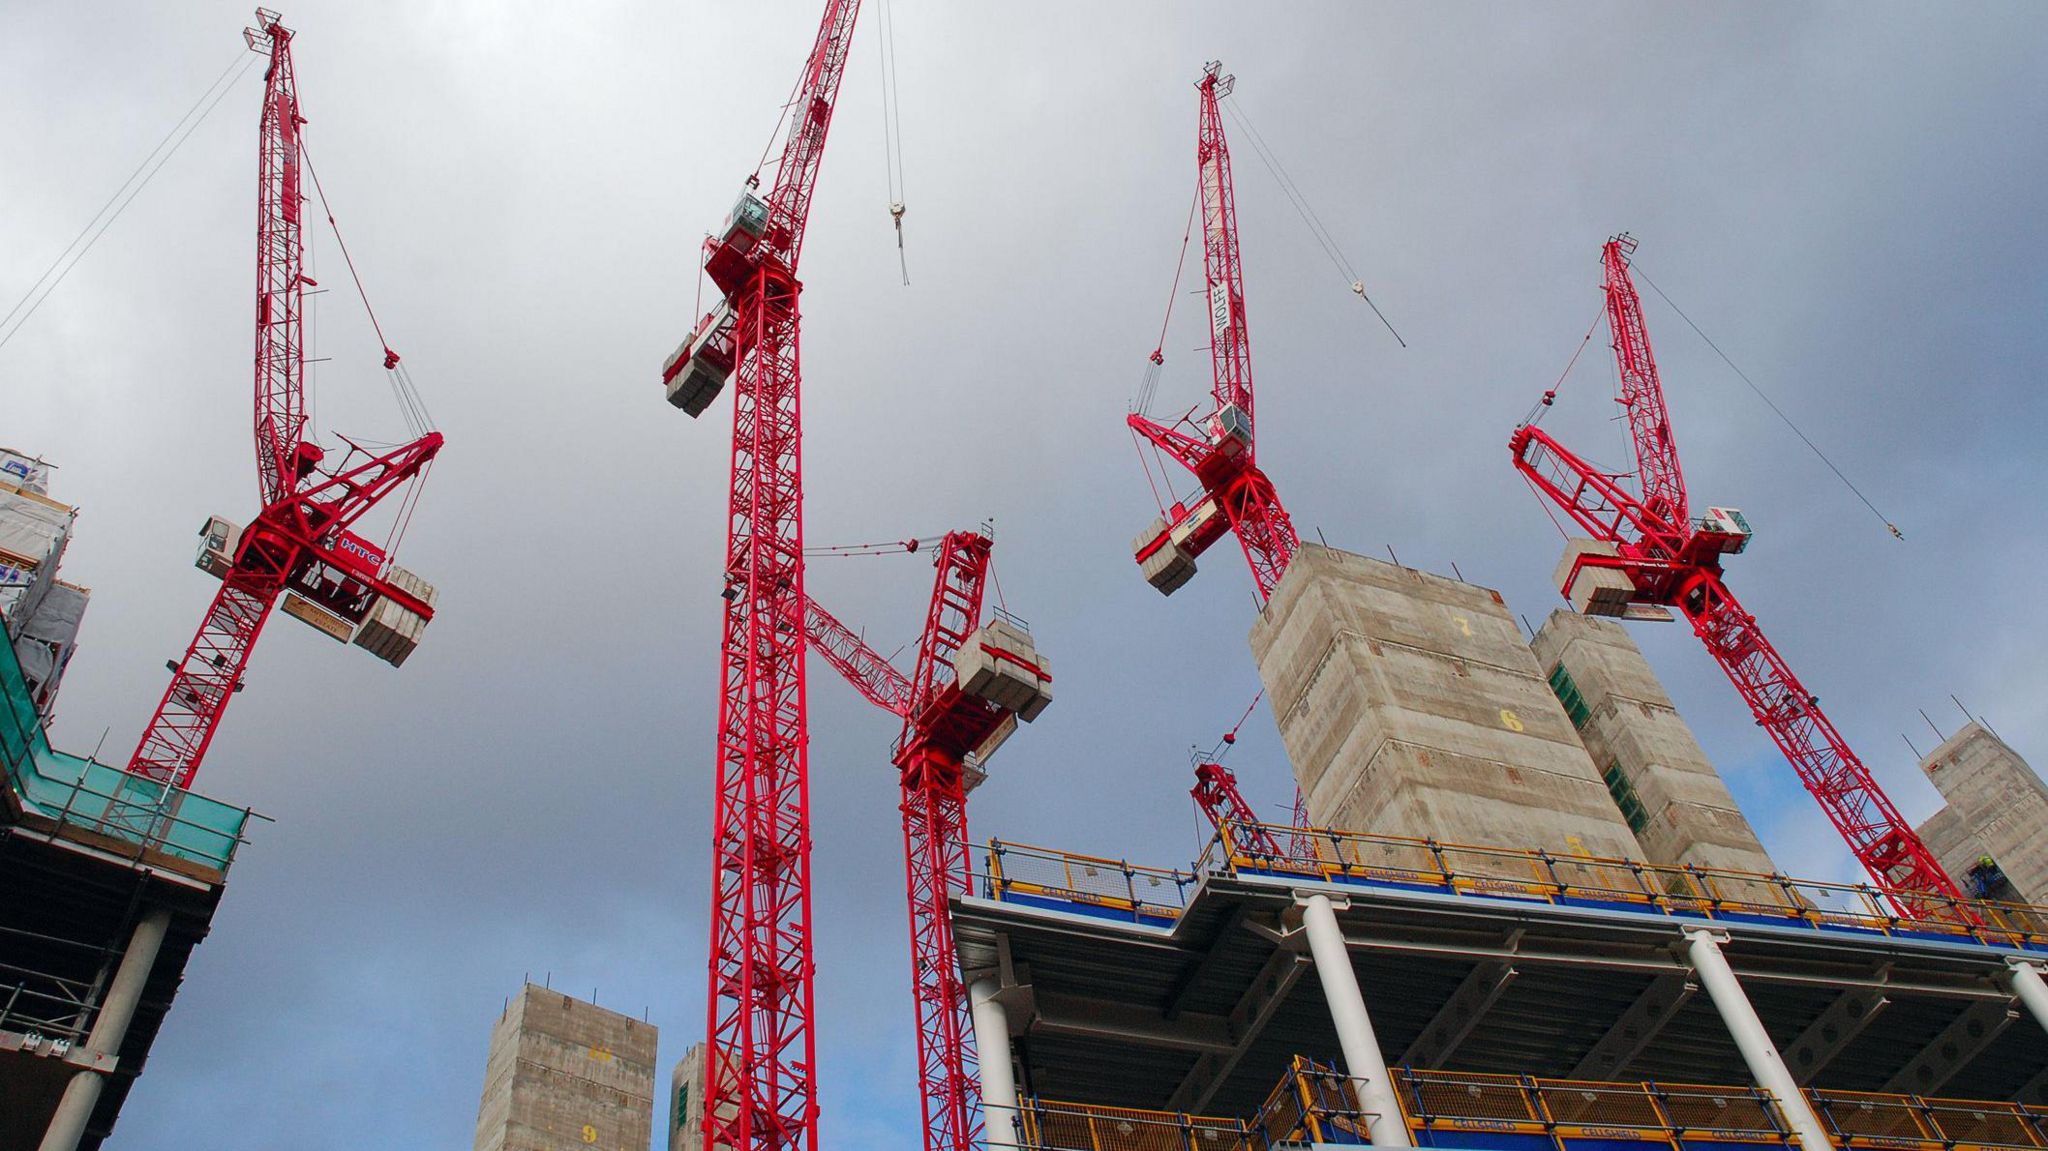 Cranes above construction site